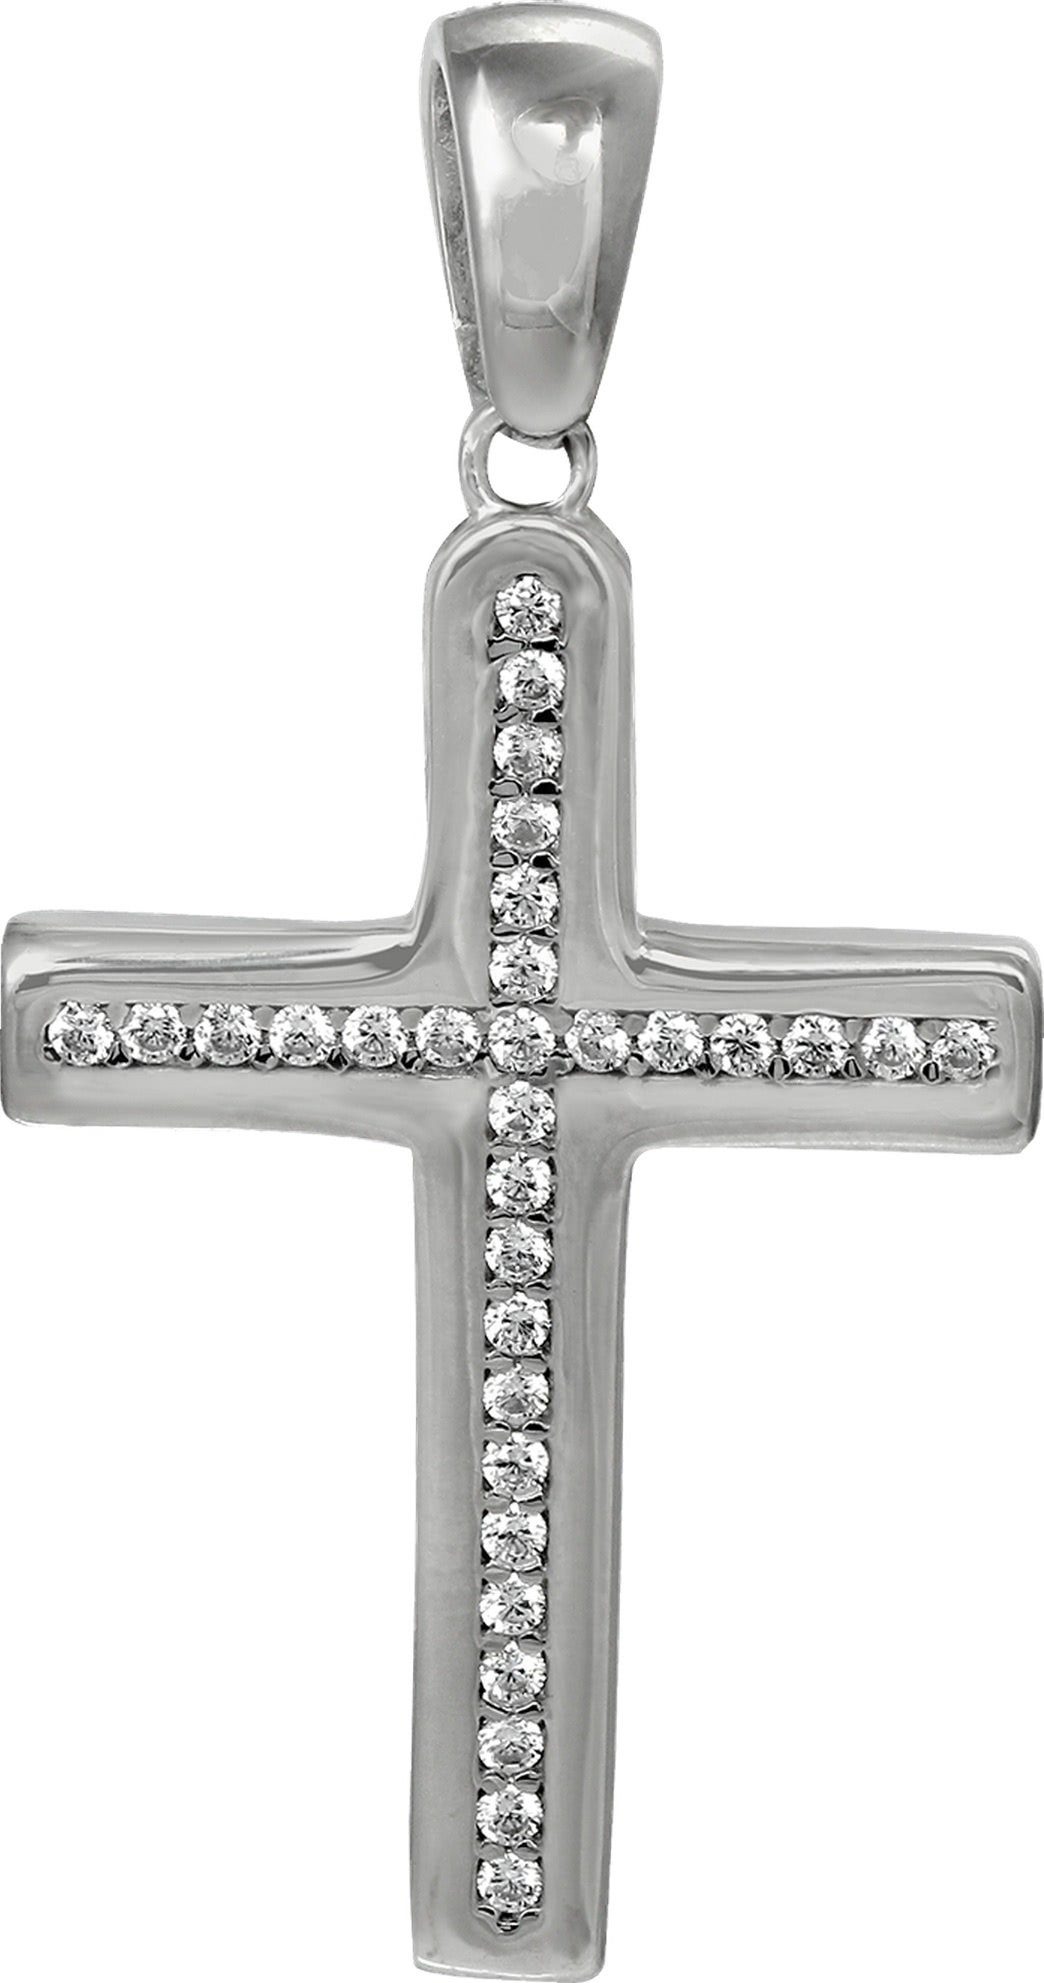 SilberDream Kettenanhänger SilberDream Ketten Anhänger -Kreuz-, Kreuzanhänger 925 Sterling Silber, silber, weiß